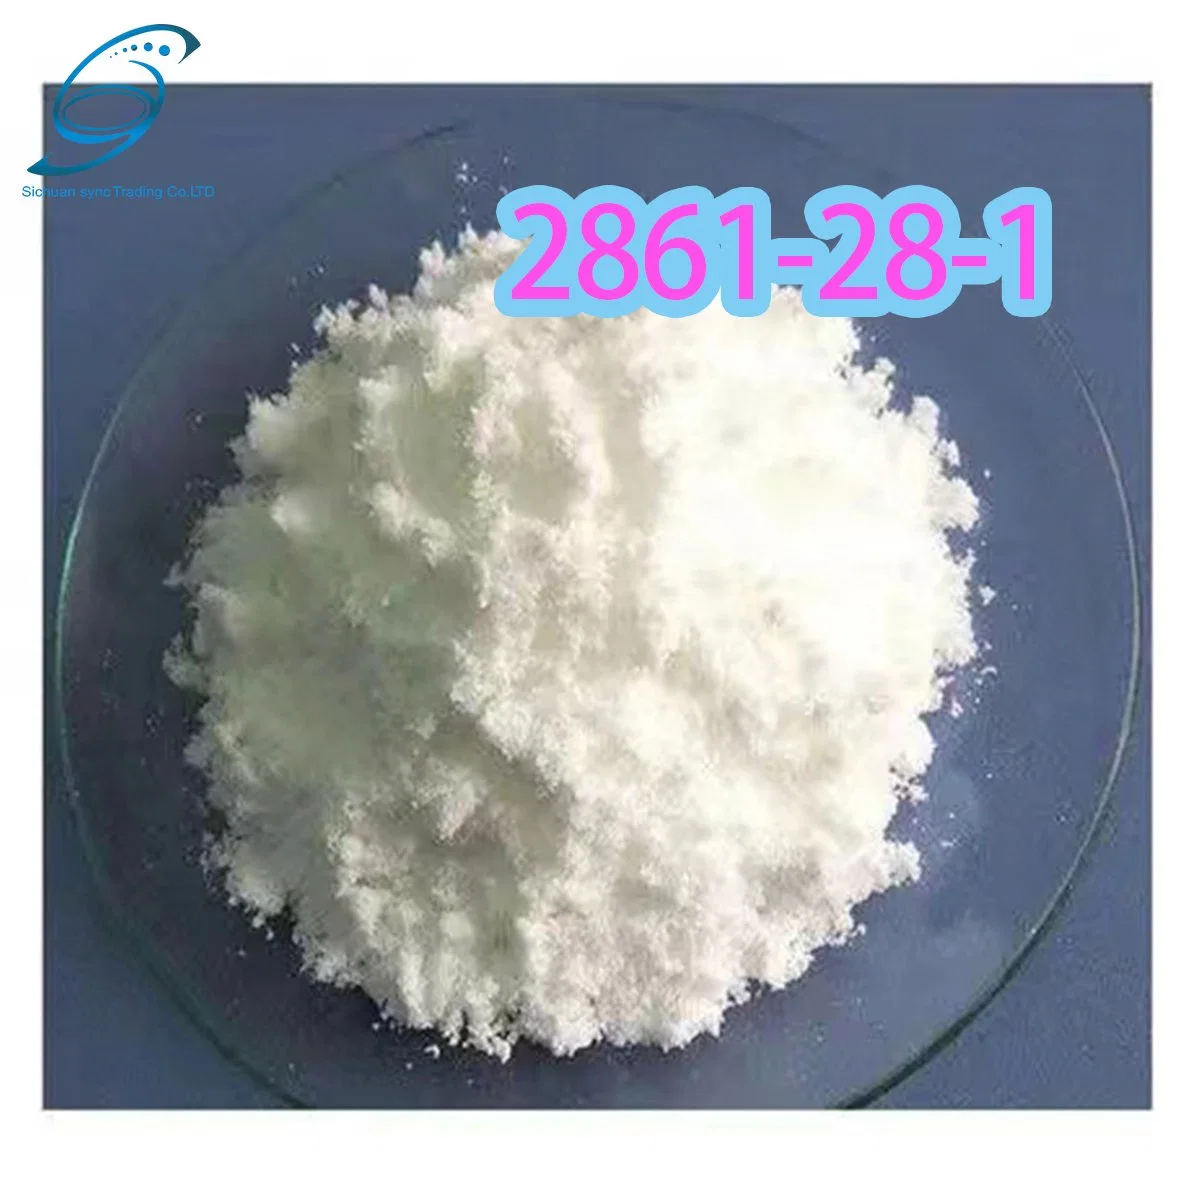 CAS 2861-28-1/hohe Qualität 2- (1, 3-benzodioxol-5-yl) Essigsäure ODM Pharmazeutische Zwischenstufe BMK PMK China Factory Supply (1, 3-BENZODIOXOL-5-YL)